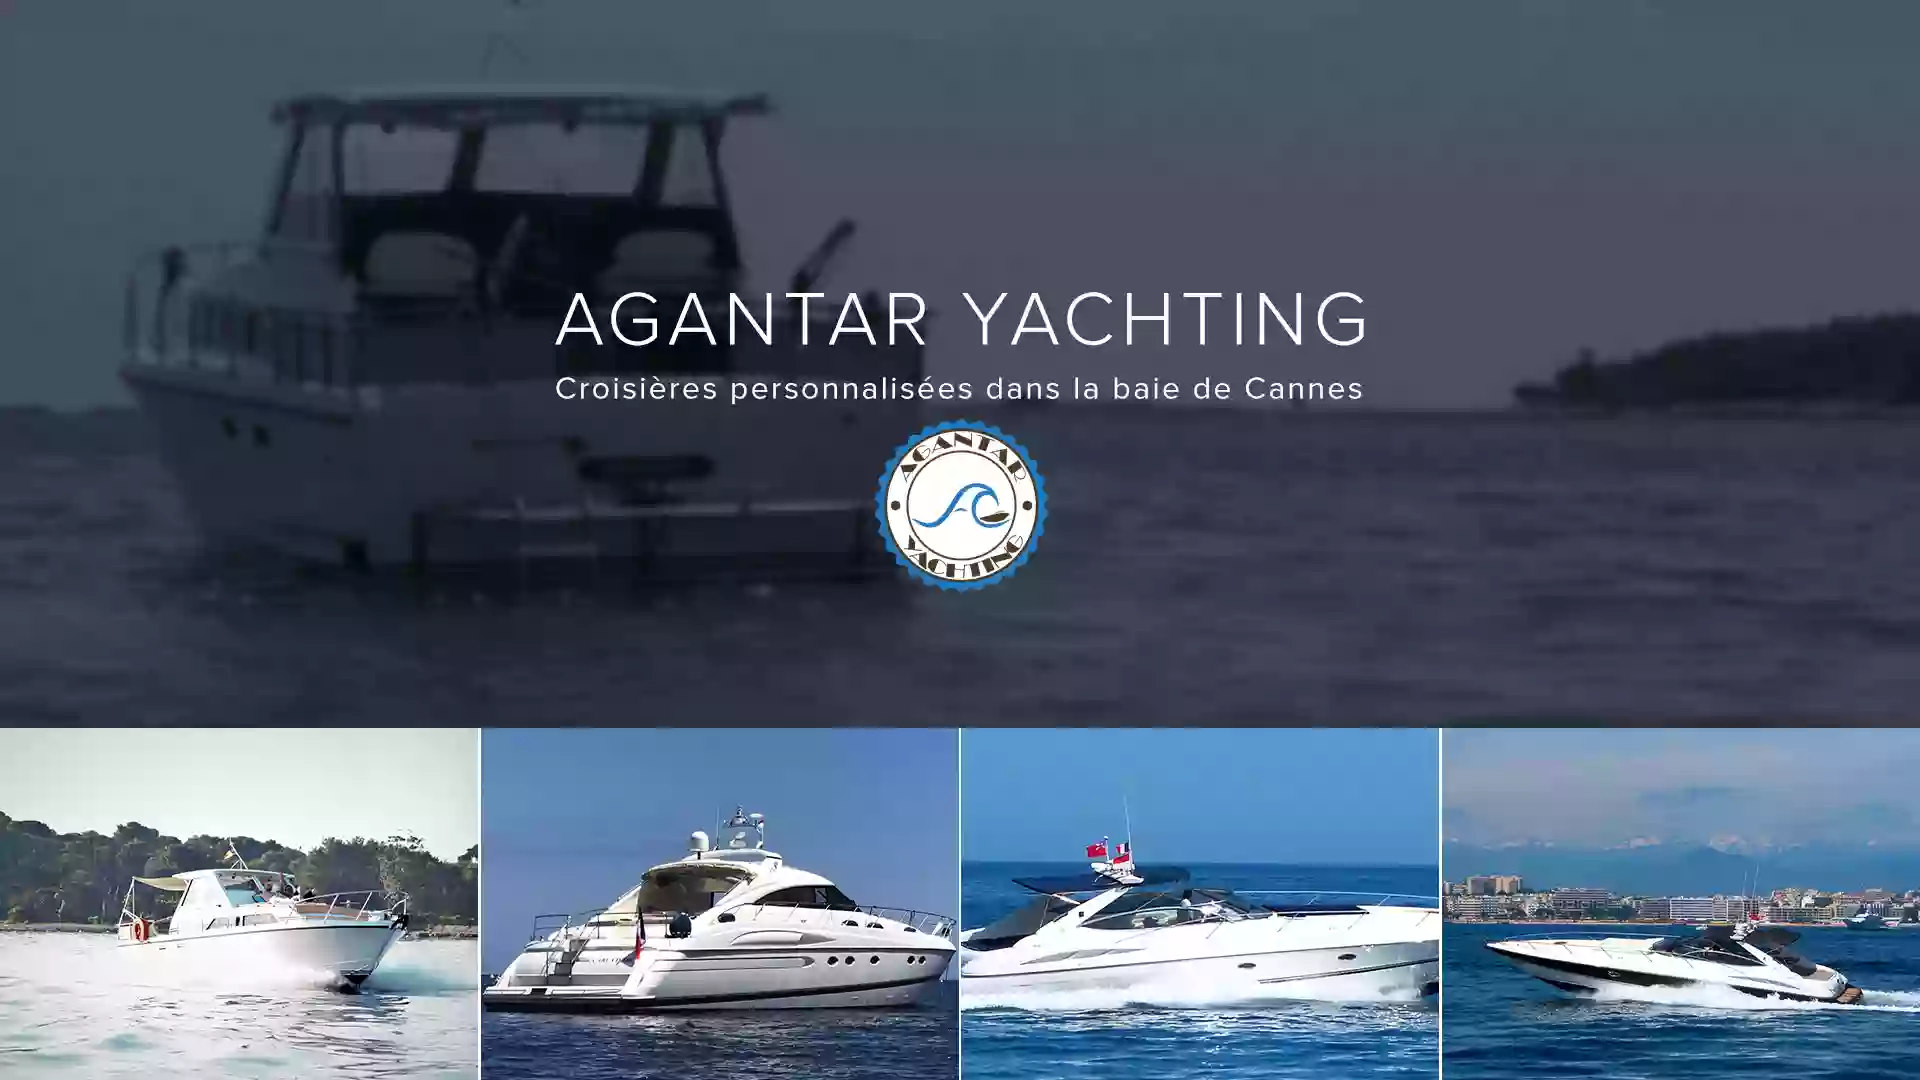 Agantar yachting